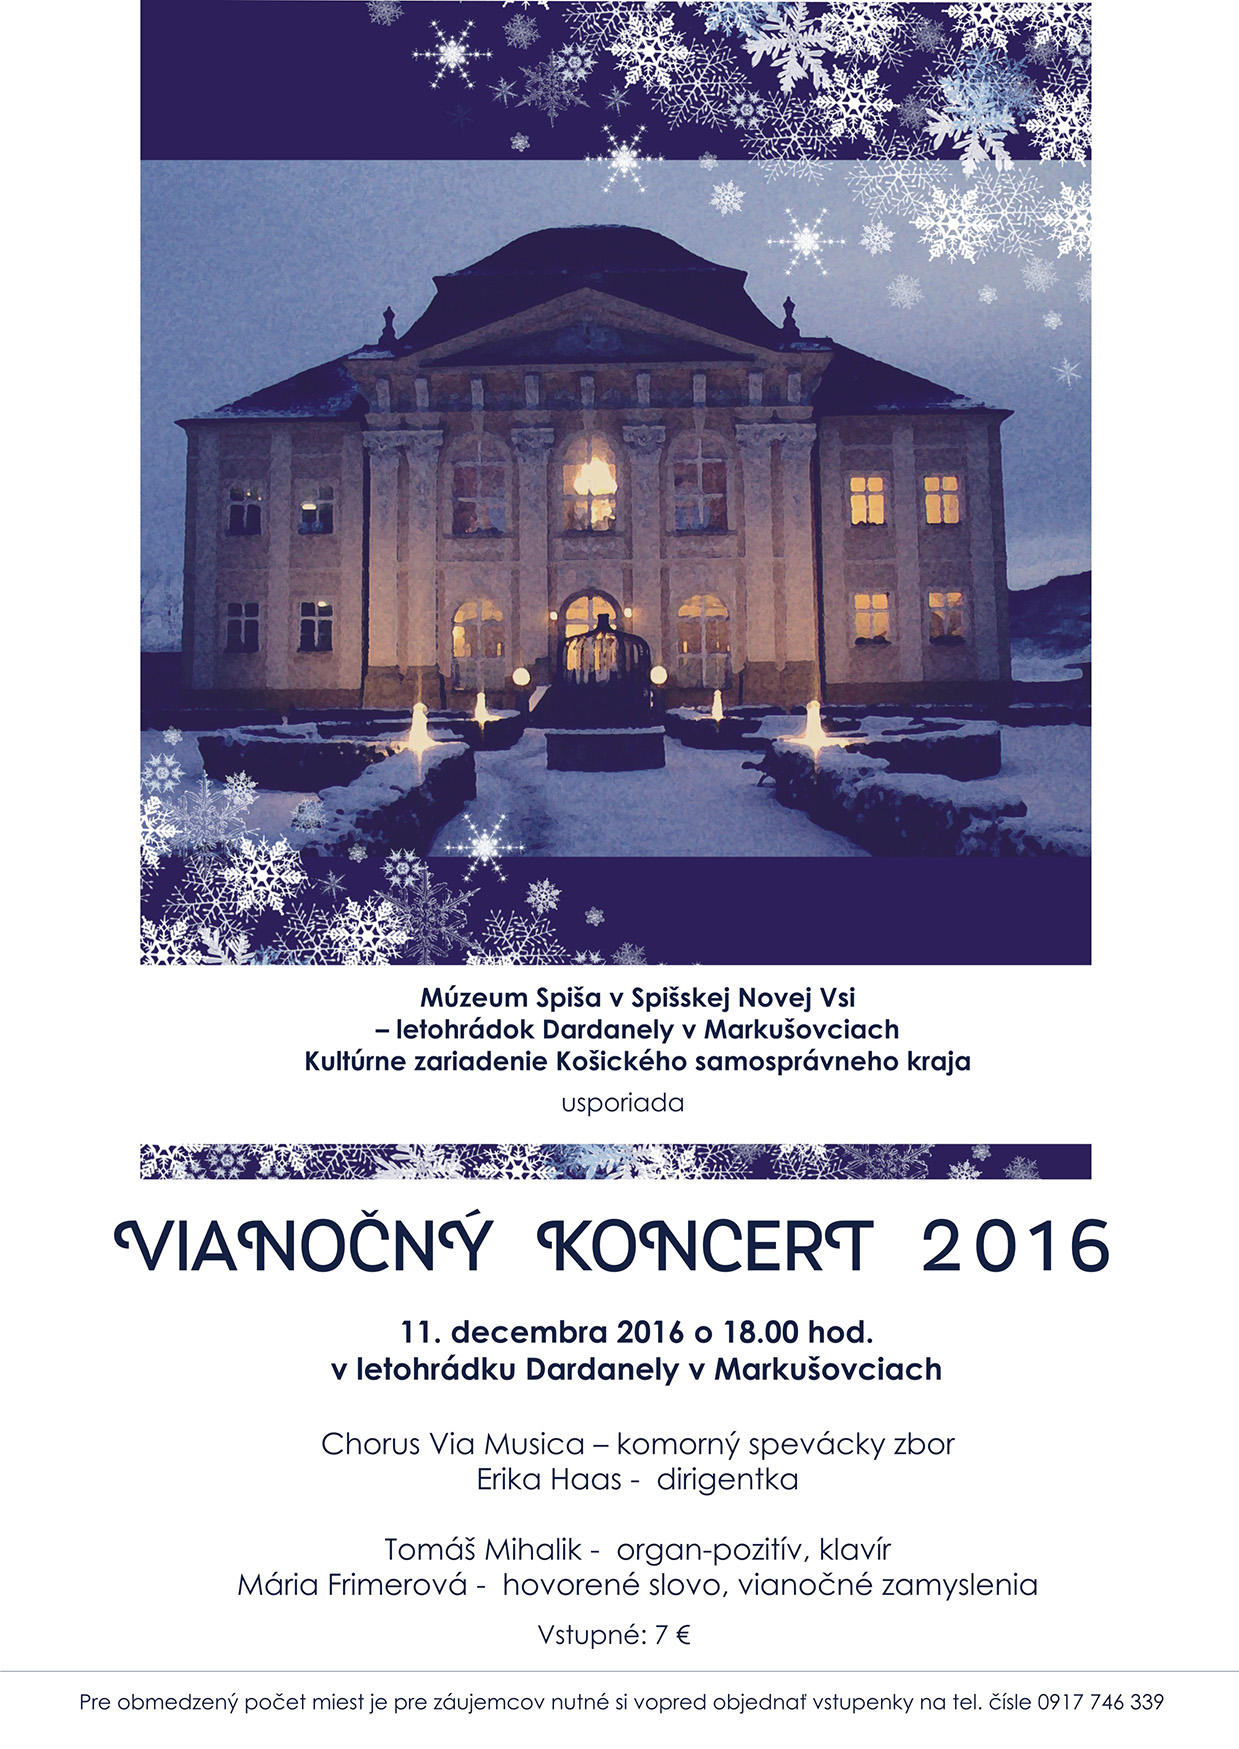 Pozvanka na Vianocny koncert 2016 v Letohradku Dardanely